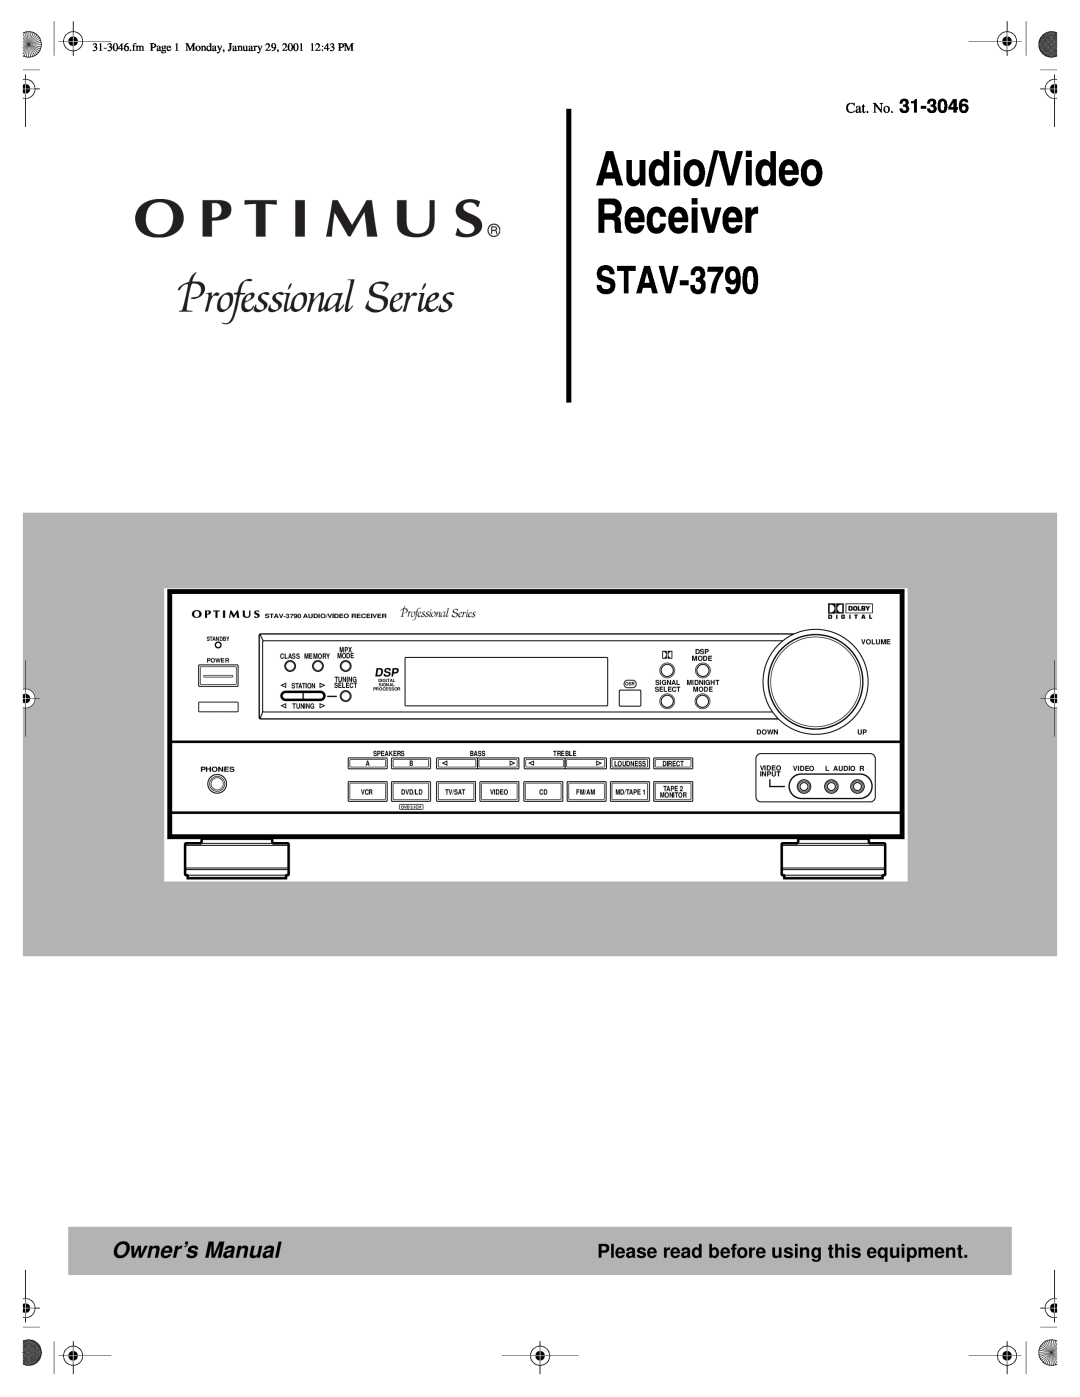 Optimus STAV-3790 owner manual Please read before using this equipment, Audio/Video Receiver, Cat. No 